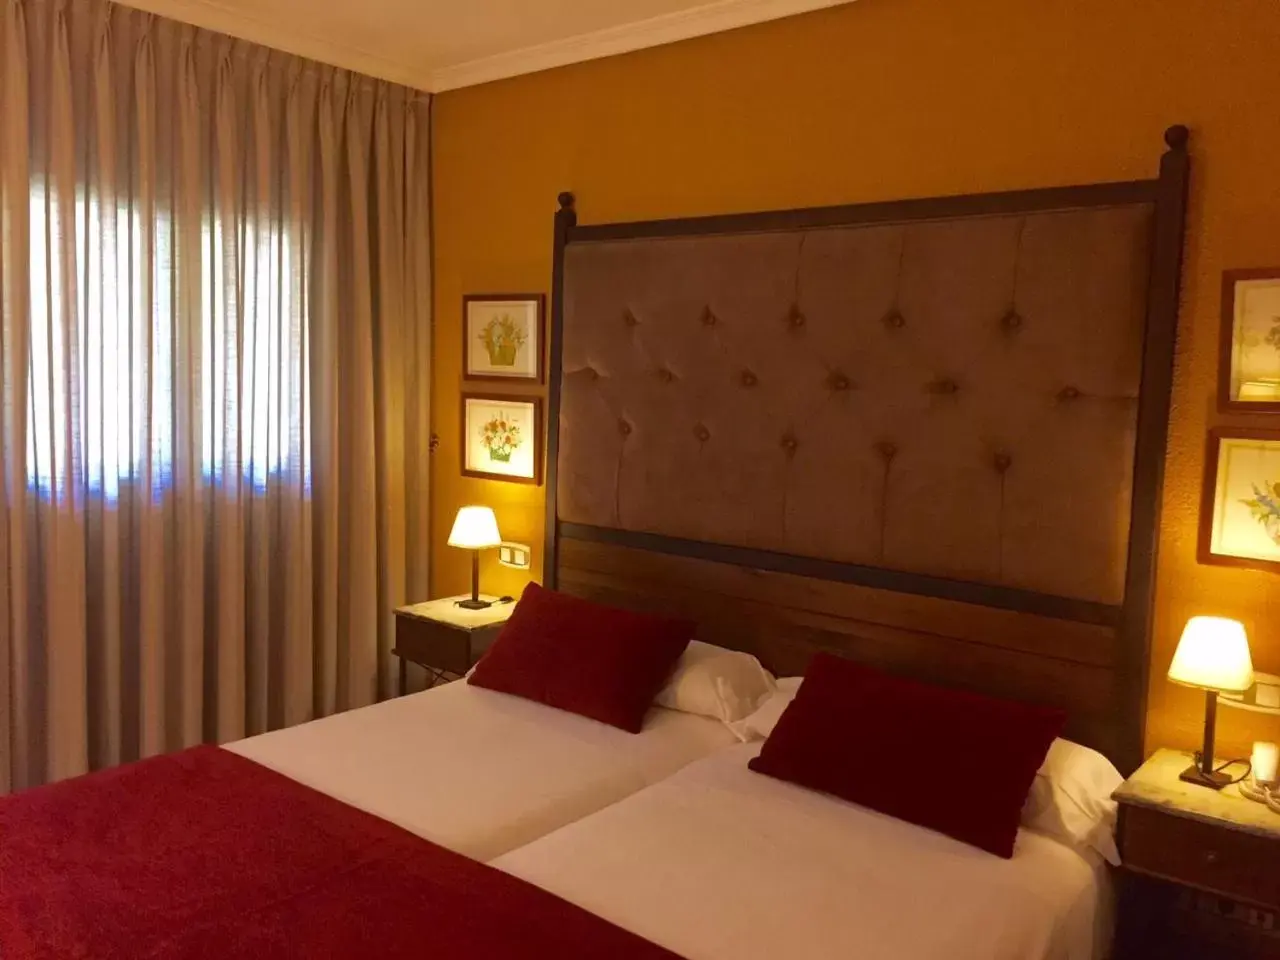 Bed, Room Photo in Hotel Rural Spa & Wellness Hacienda Los Robles